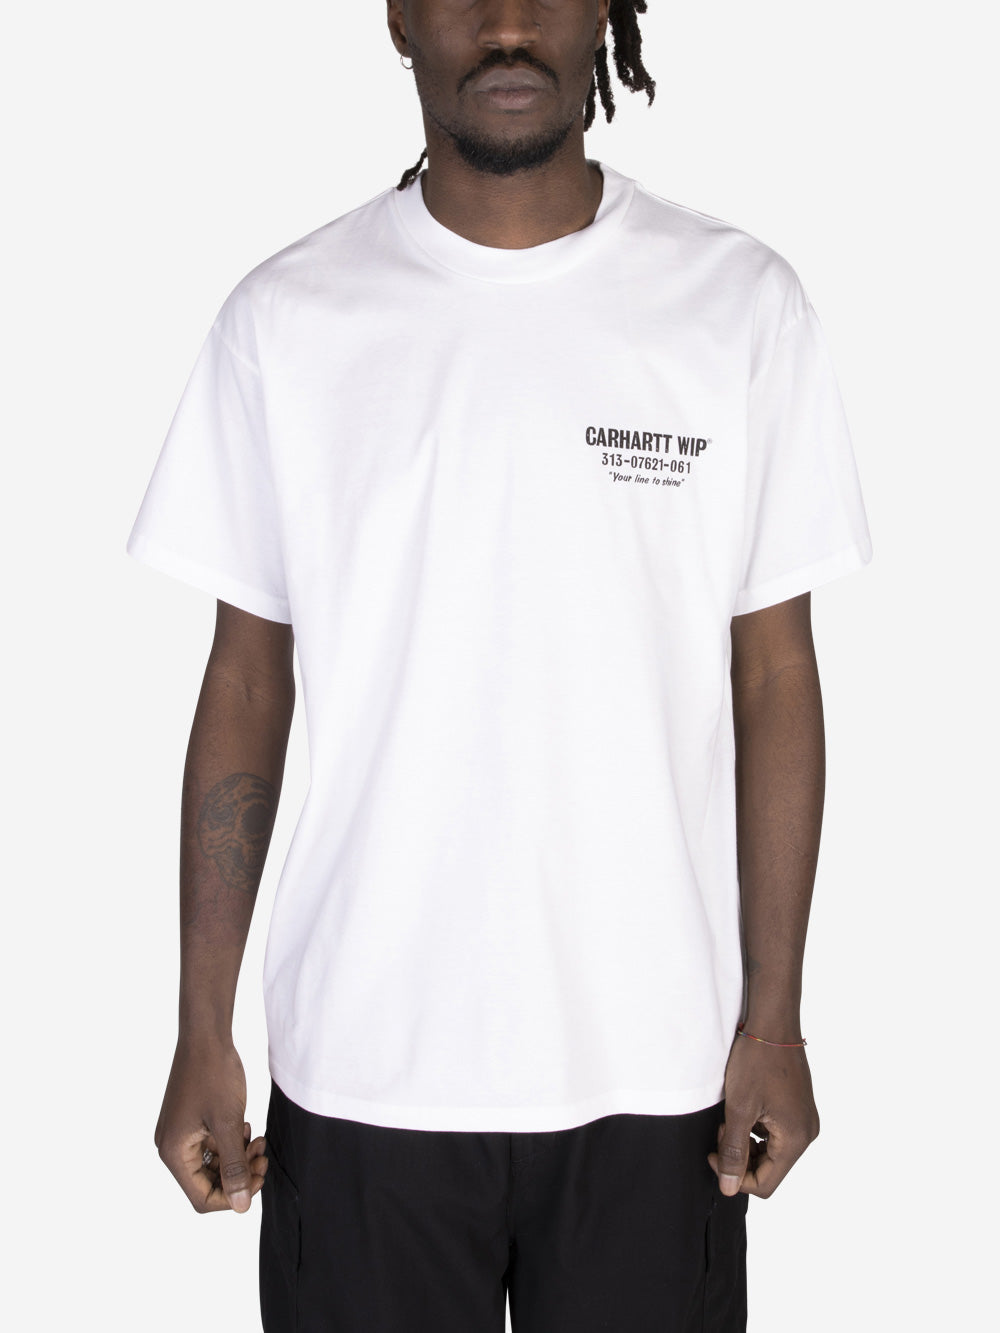 CARHARTT WIP S/S Less Troubles T-Shirt Bianco Urbanstaroma